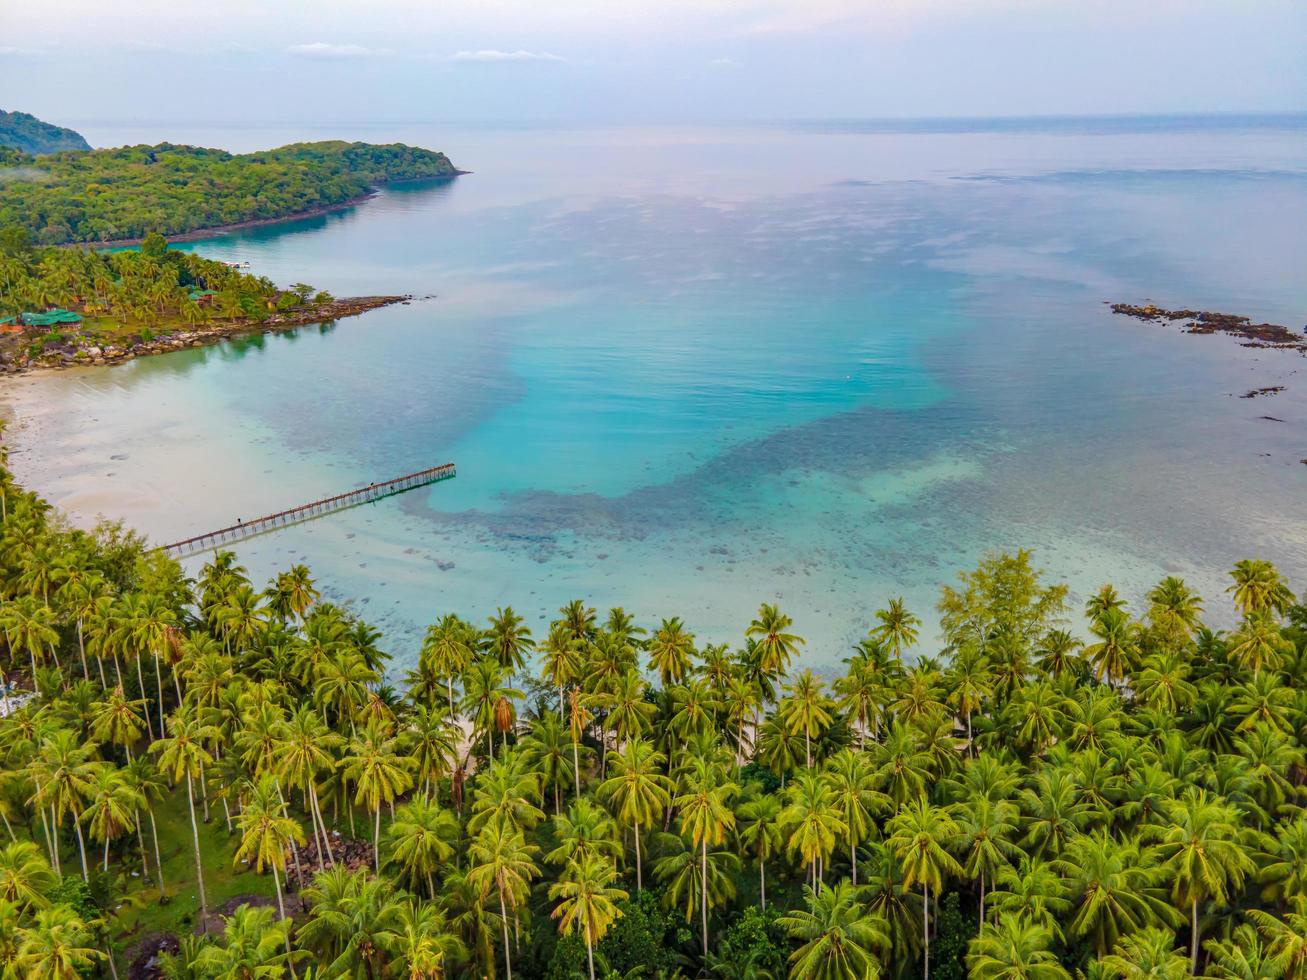 luchtfoto van natuur tropisch paradijs eiland strand beveelt een goede zomer mooie tijd op het strand met helder water en blauwe lucht in koh kood of ko kut, thailand. foto